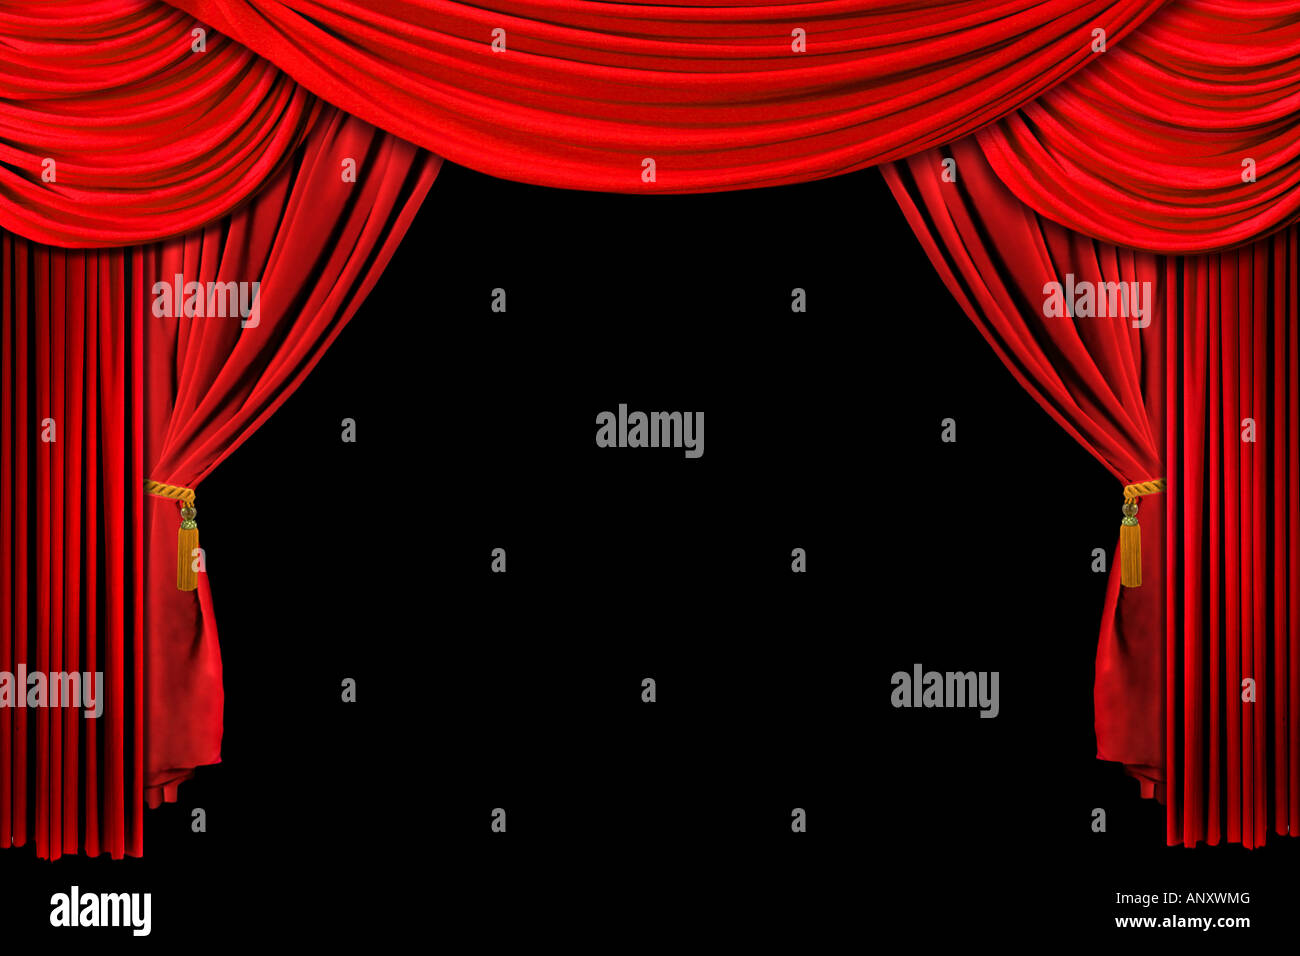 Rosso brillante palcoscenico teatro tenda drappeggiata su sfondo nero Foto Stock